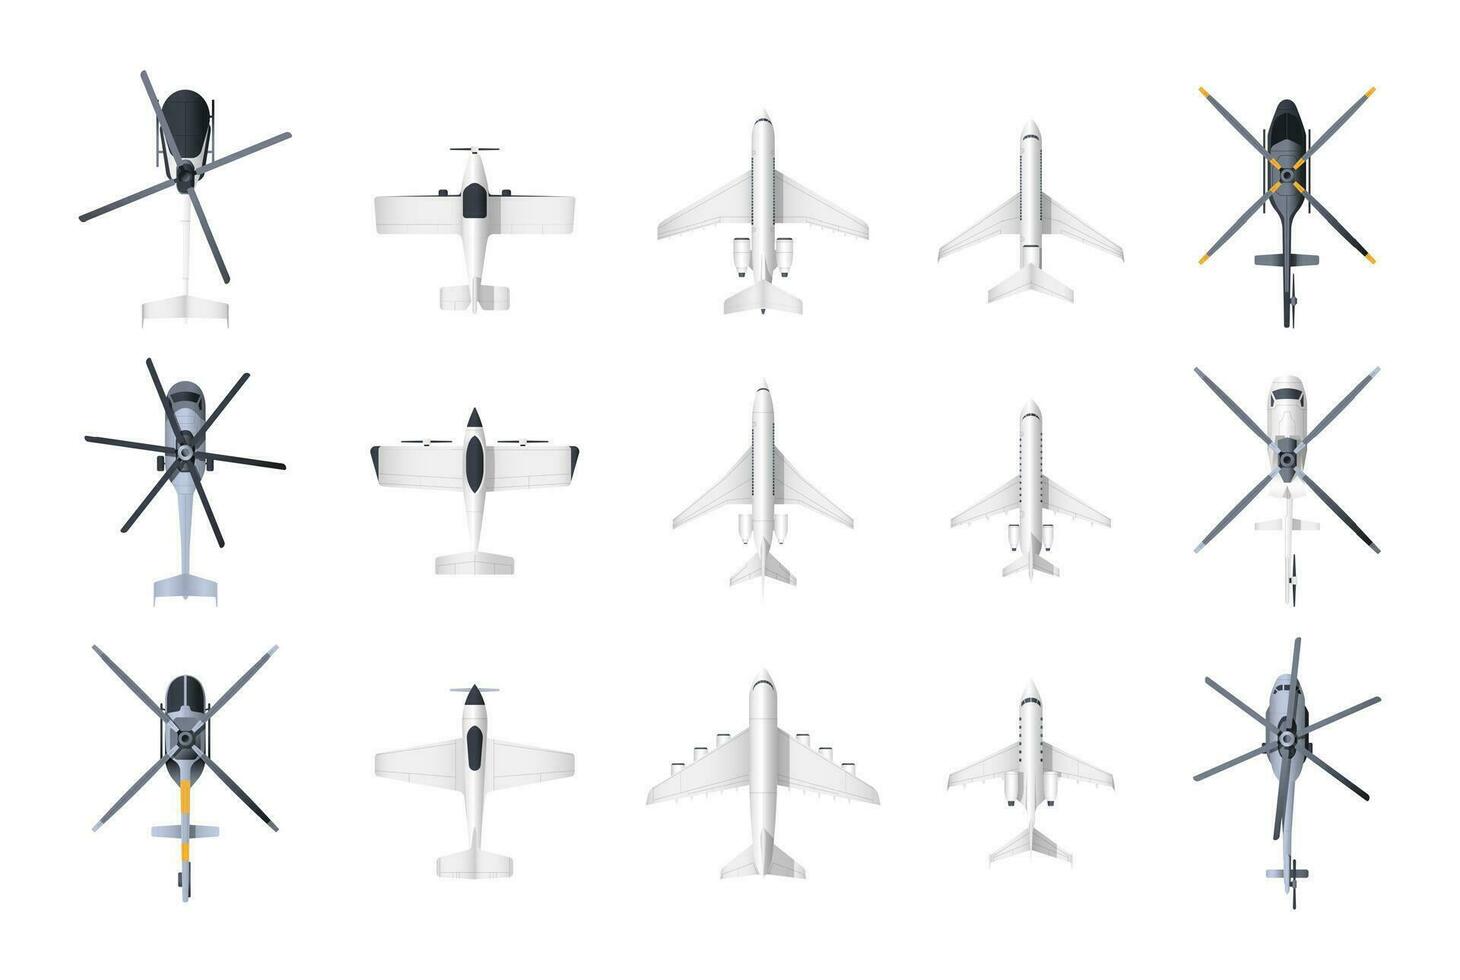 aerei e elicotteri superiore Visualizza. cartone animato militare e civile aviazione aereo, passeggeri e carico aereo e elicottero Modelli collezione. vettore impostato